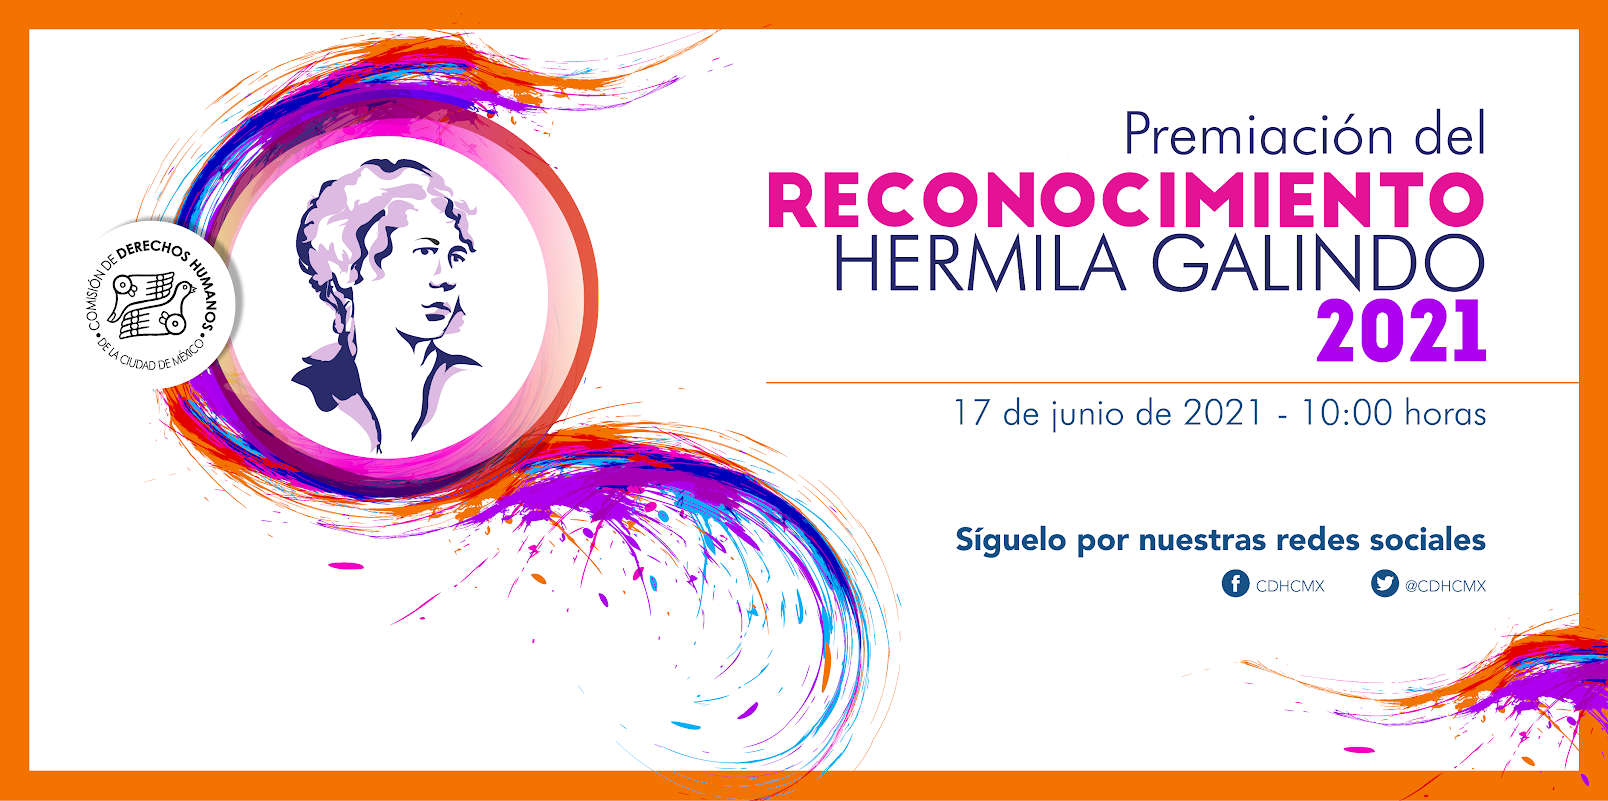 Premiación del Reconocimiento Hermila Galindo 2021